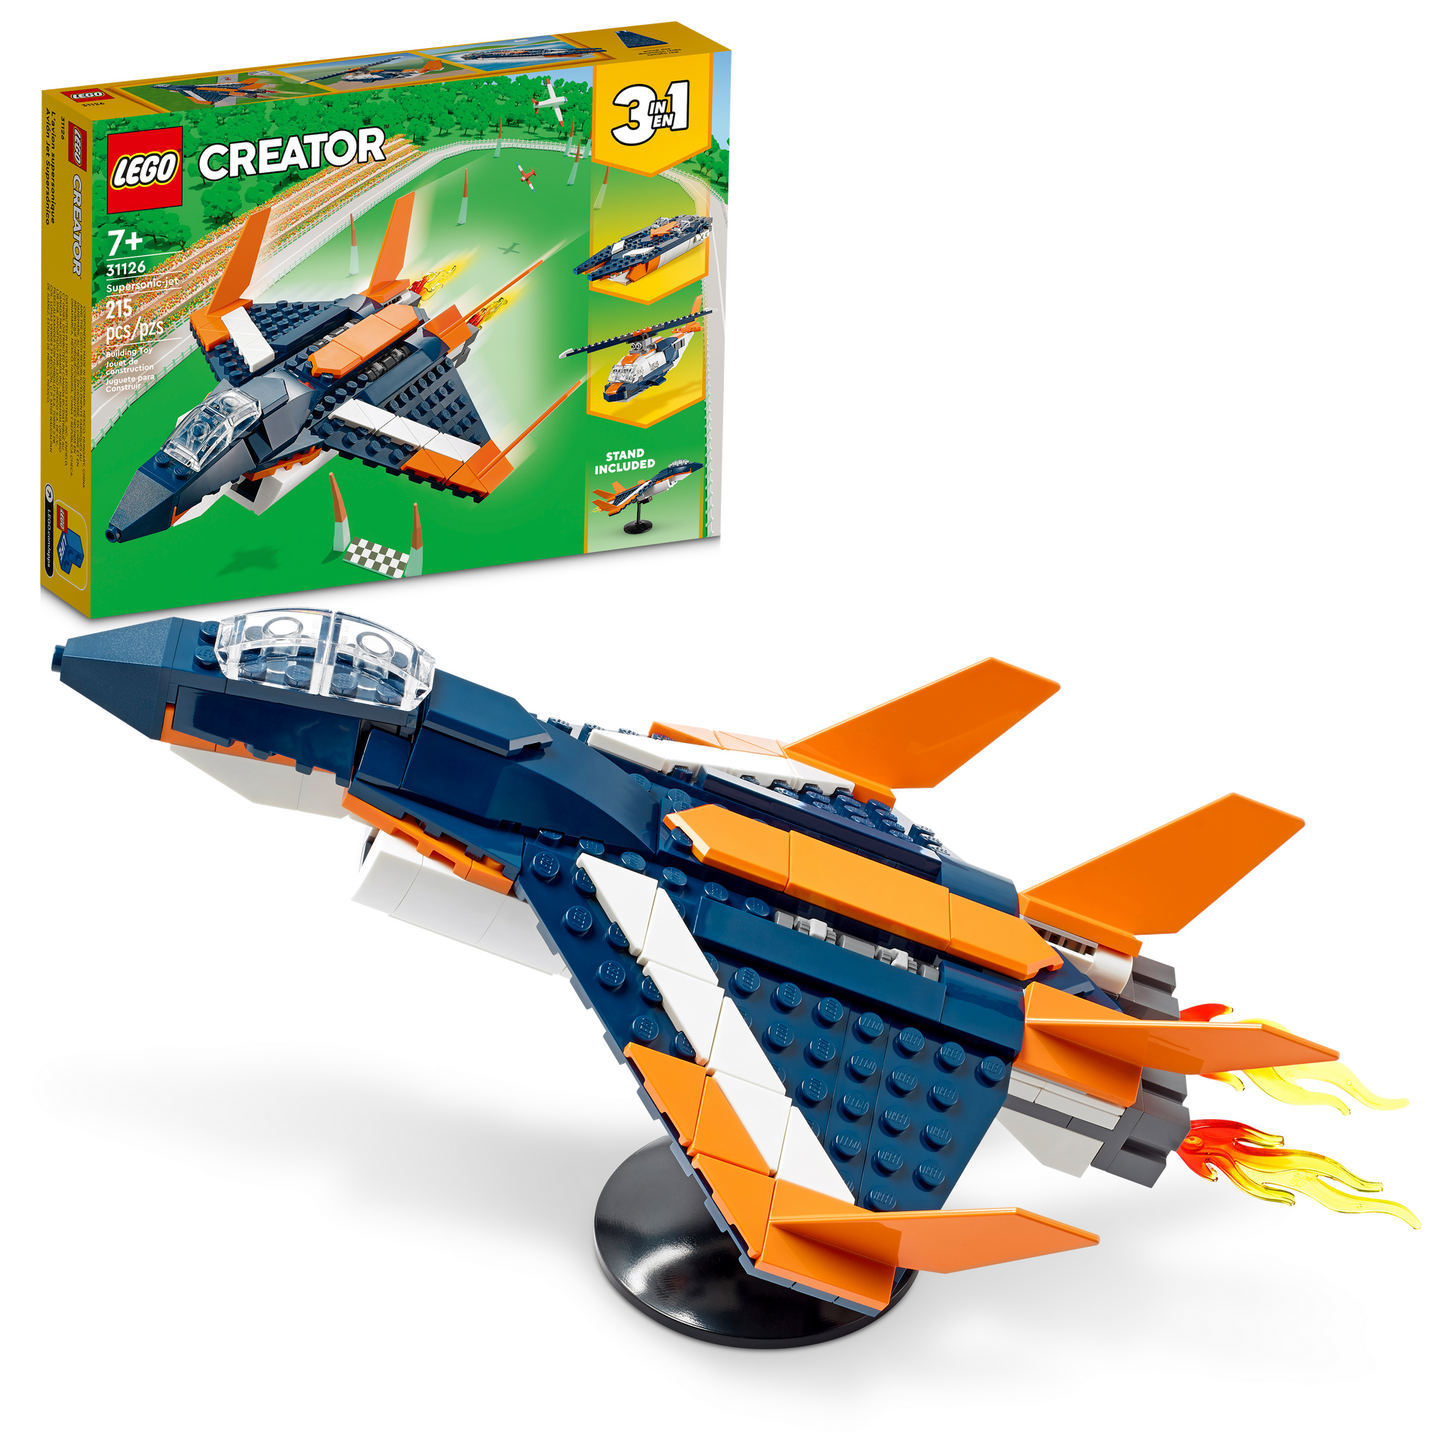 LEGO Supersonic Jet